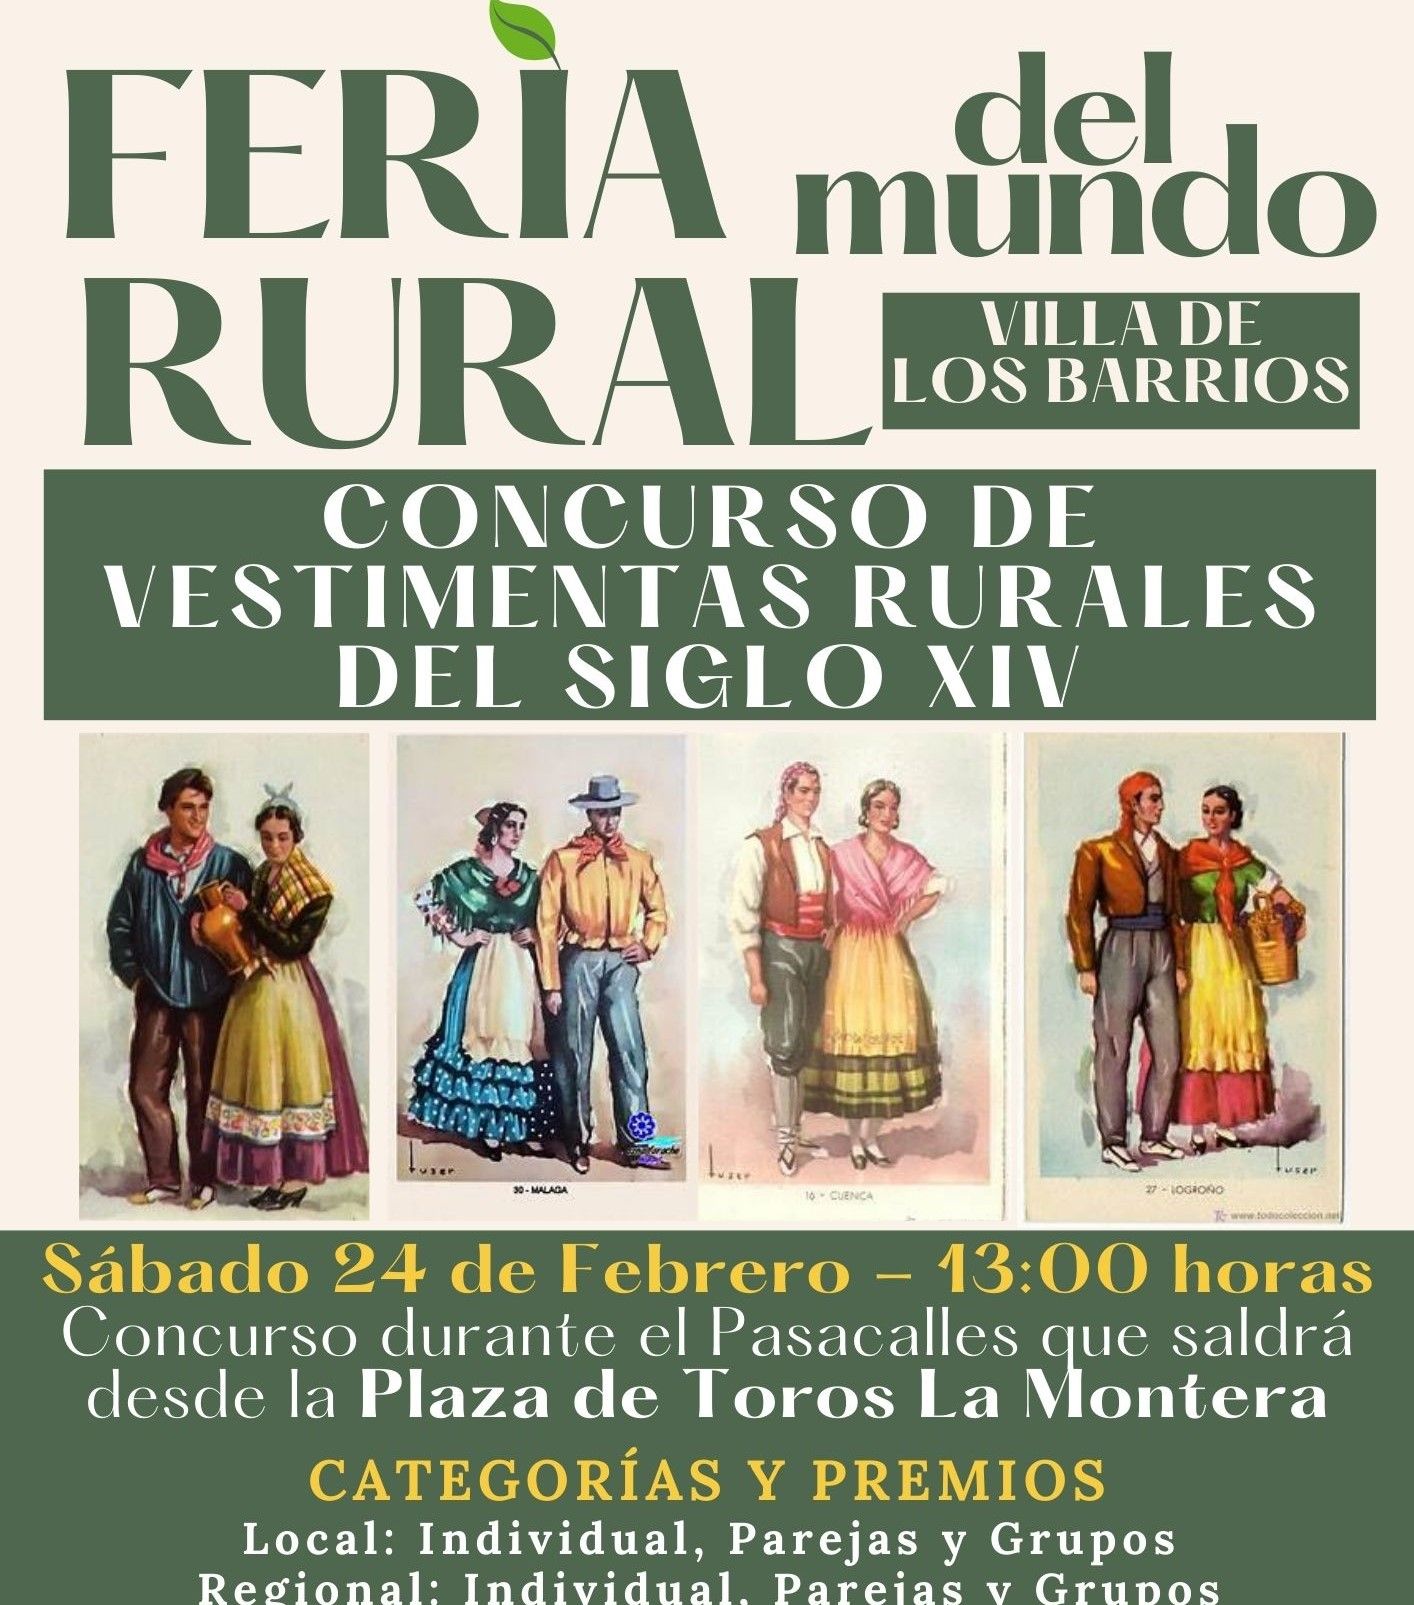 Publicadas las bases del concurso de vestimentas rurales, dentro de la Feria del Mundo Rural de este fin de semana en Los Barrios.